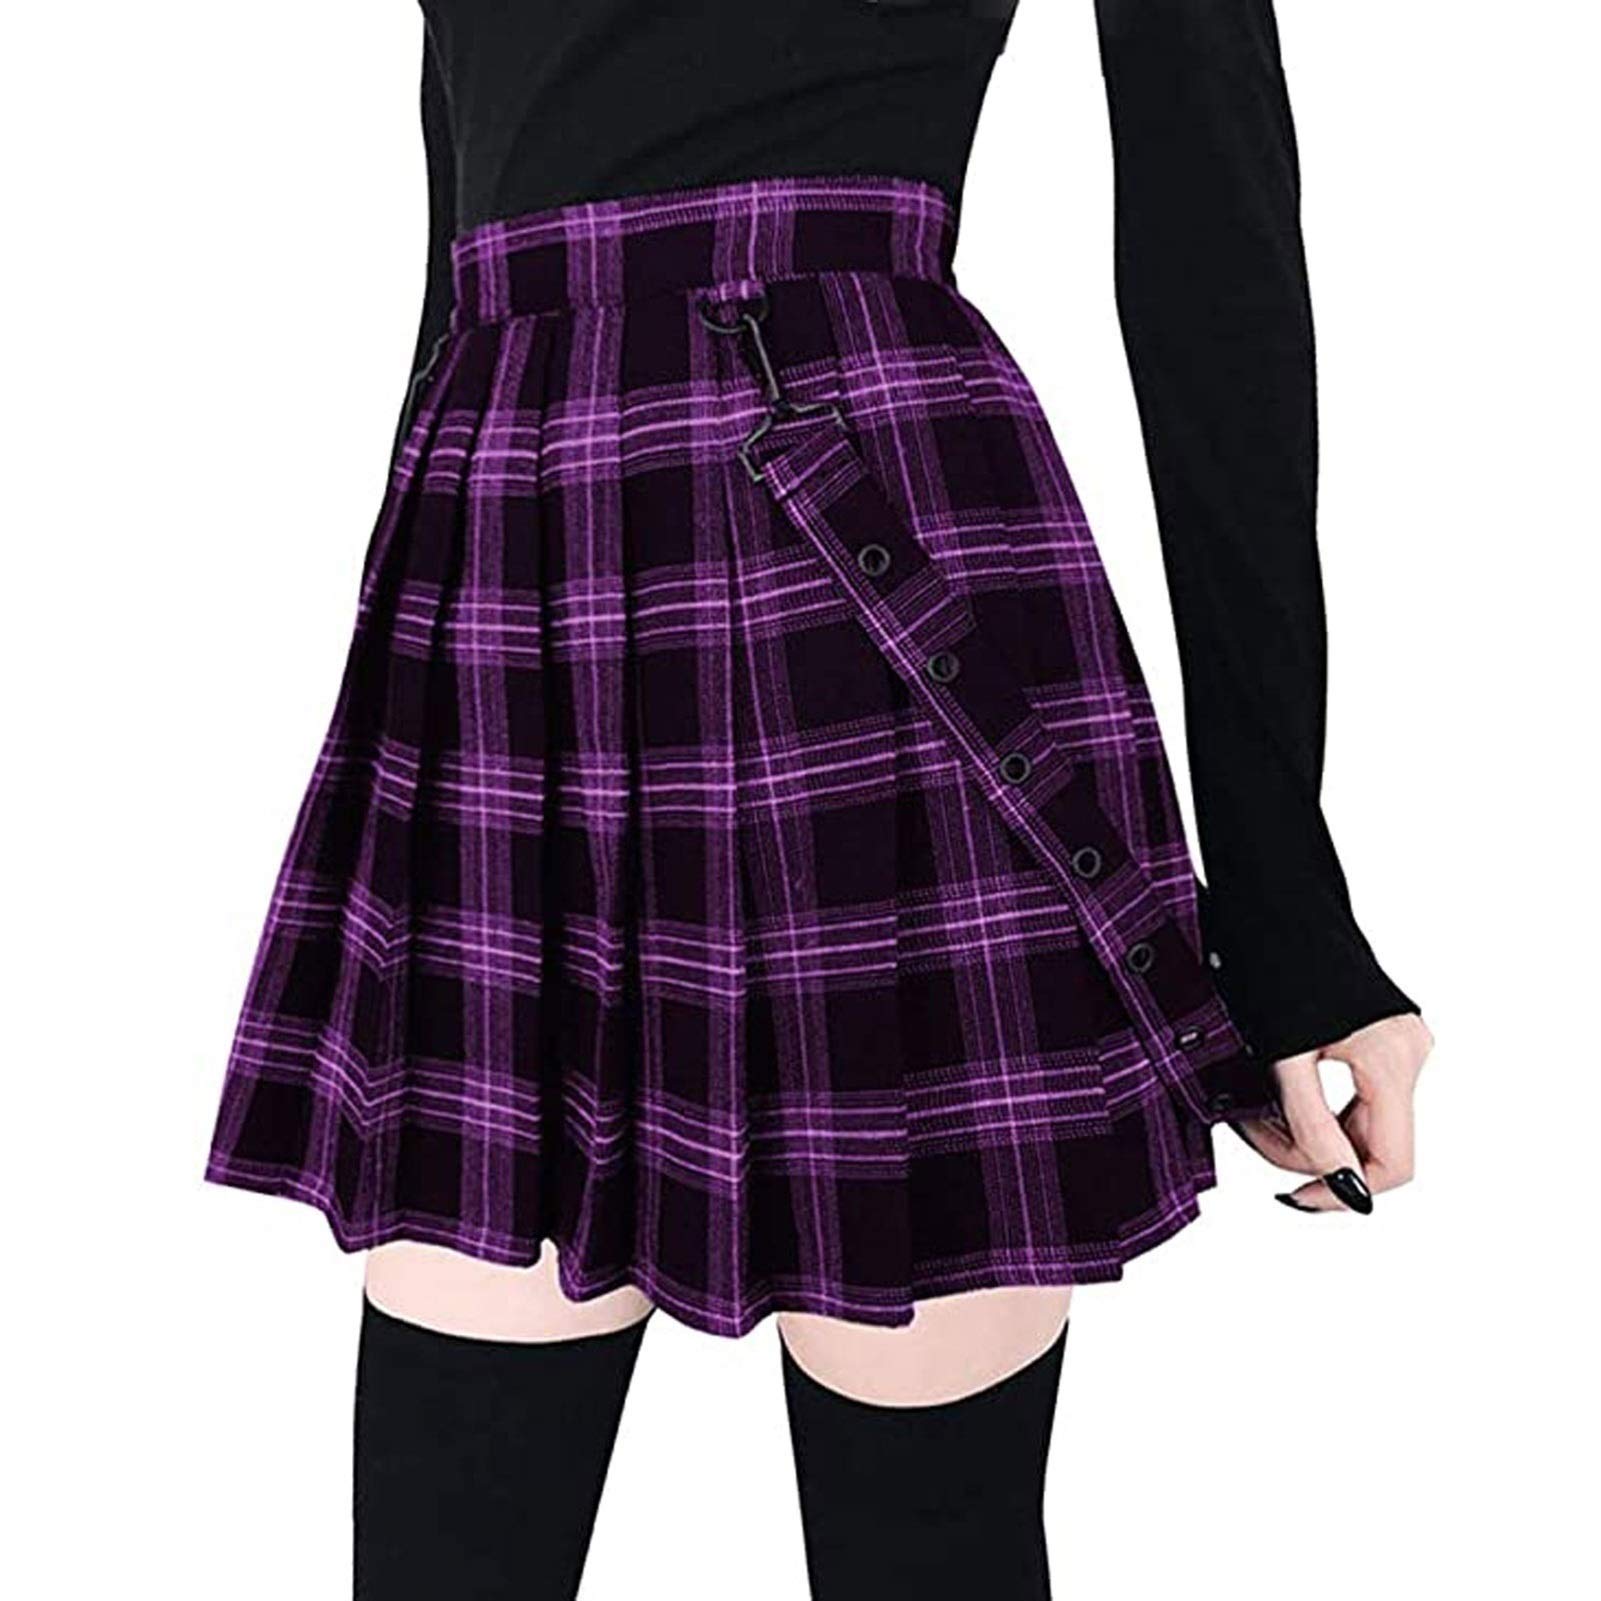 Damen Kilt Rock Kariert Schottischer Kilt Tartan Rot Blau Faltenrock mit Kette Minirock Hohe Taille Kurz Skirt Skater Rock (Color : Purple-B, Size : XL)